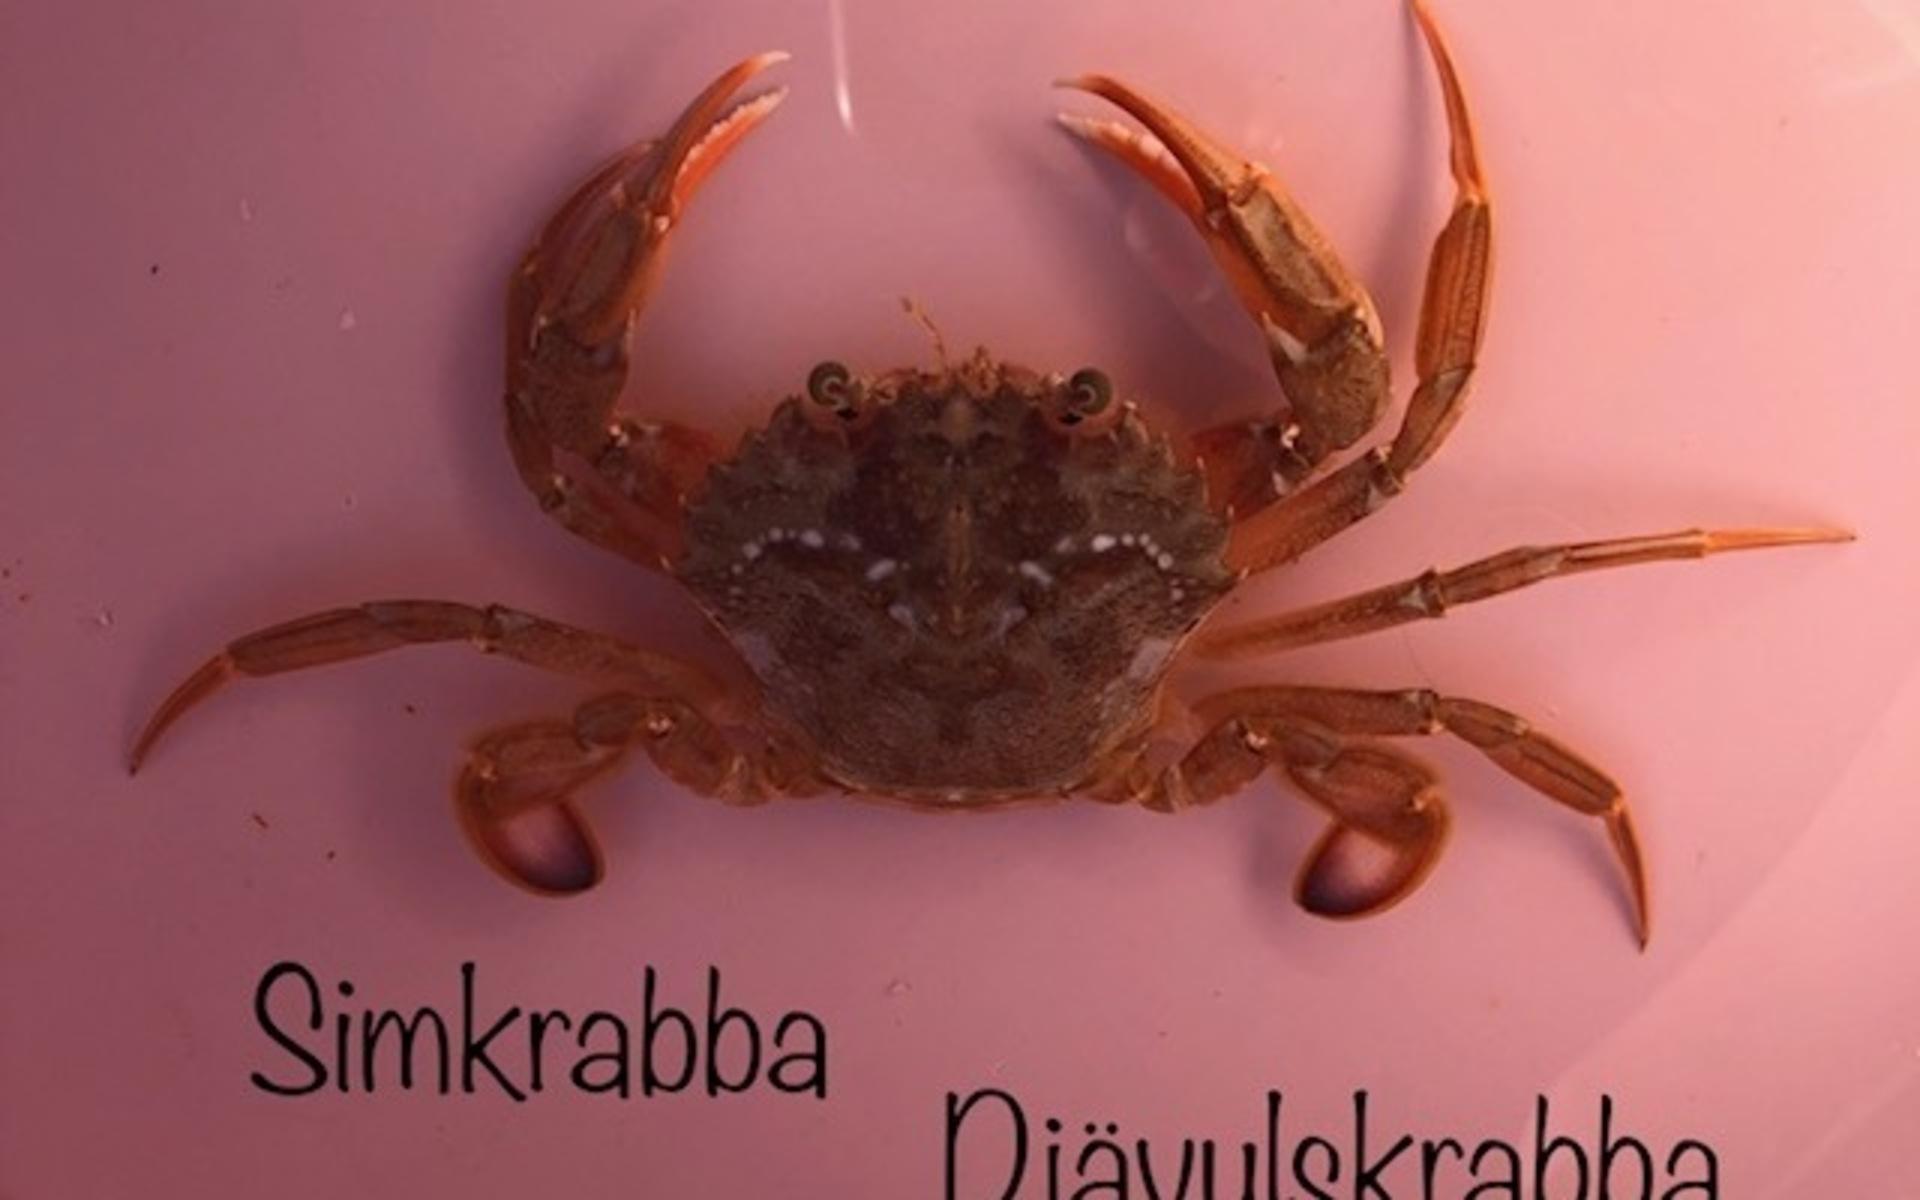 Fick en Simkrabba även kallas Djävulskrabba i fisknätet utanför Hållö.